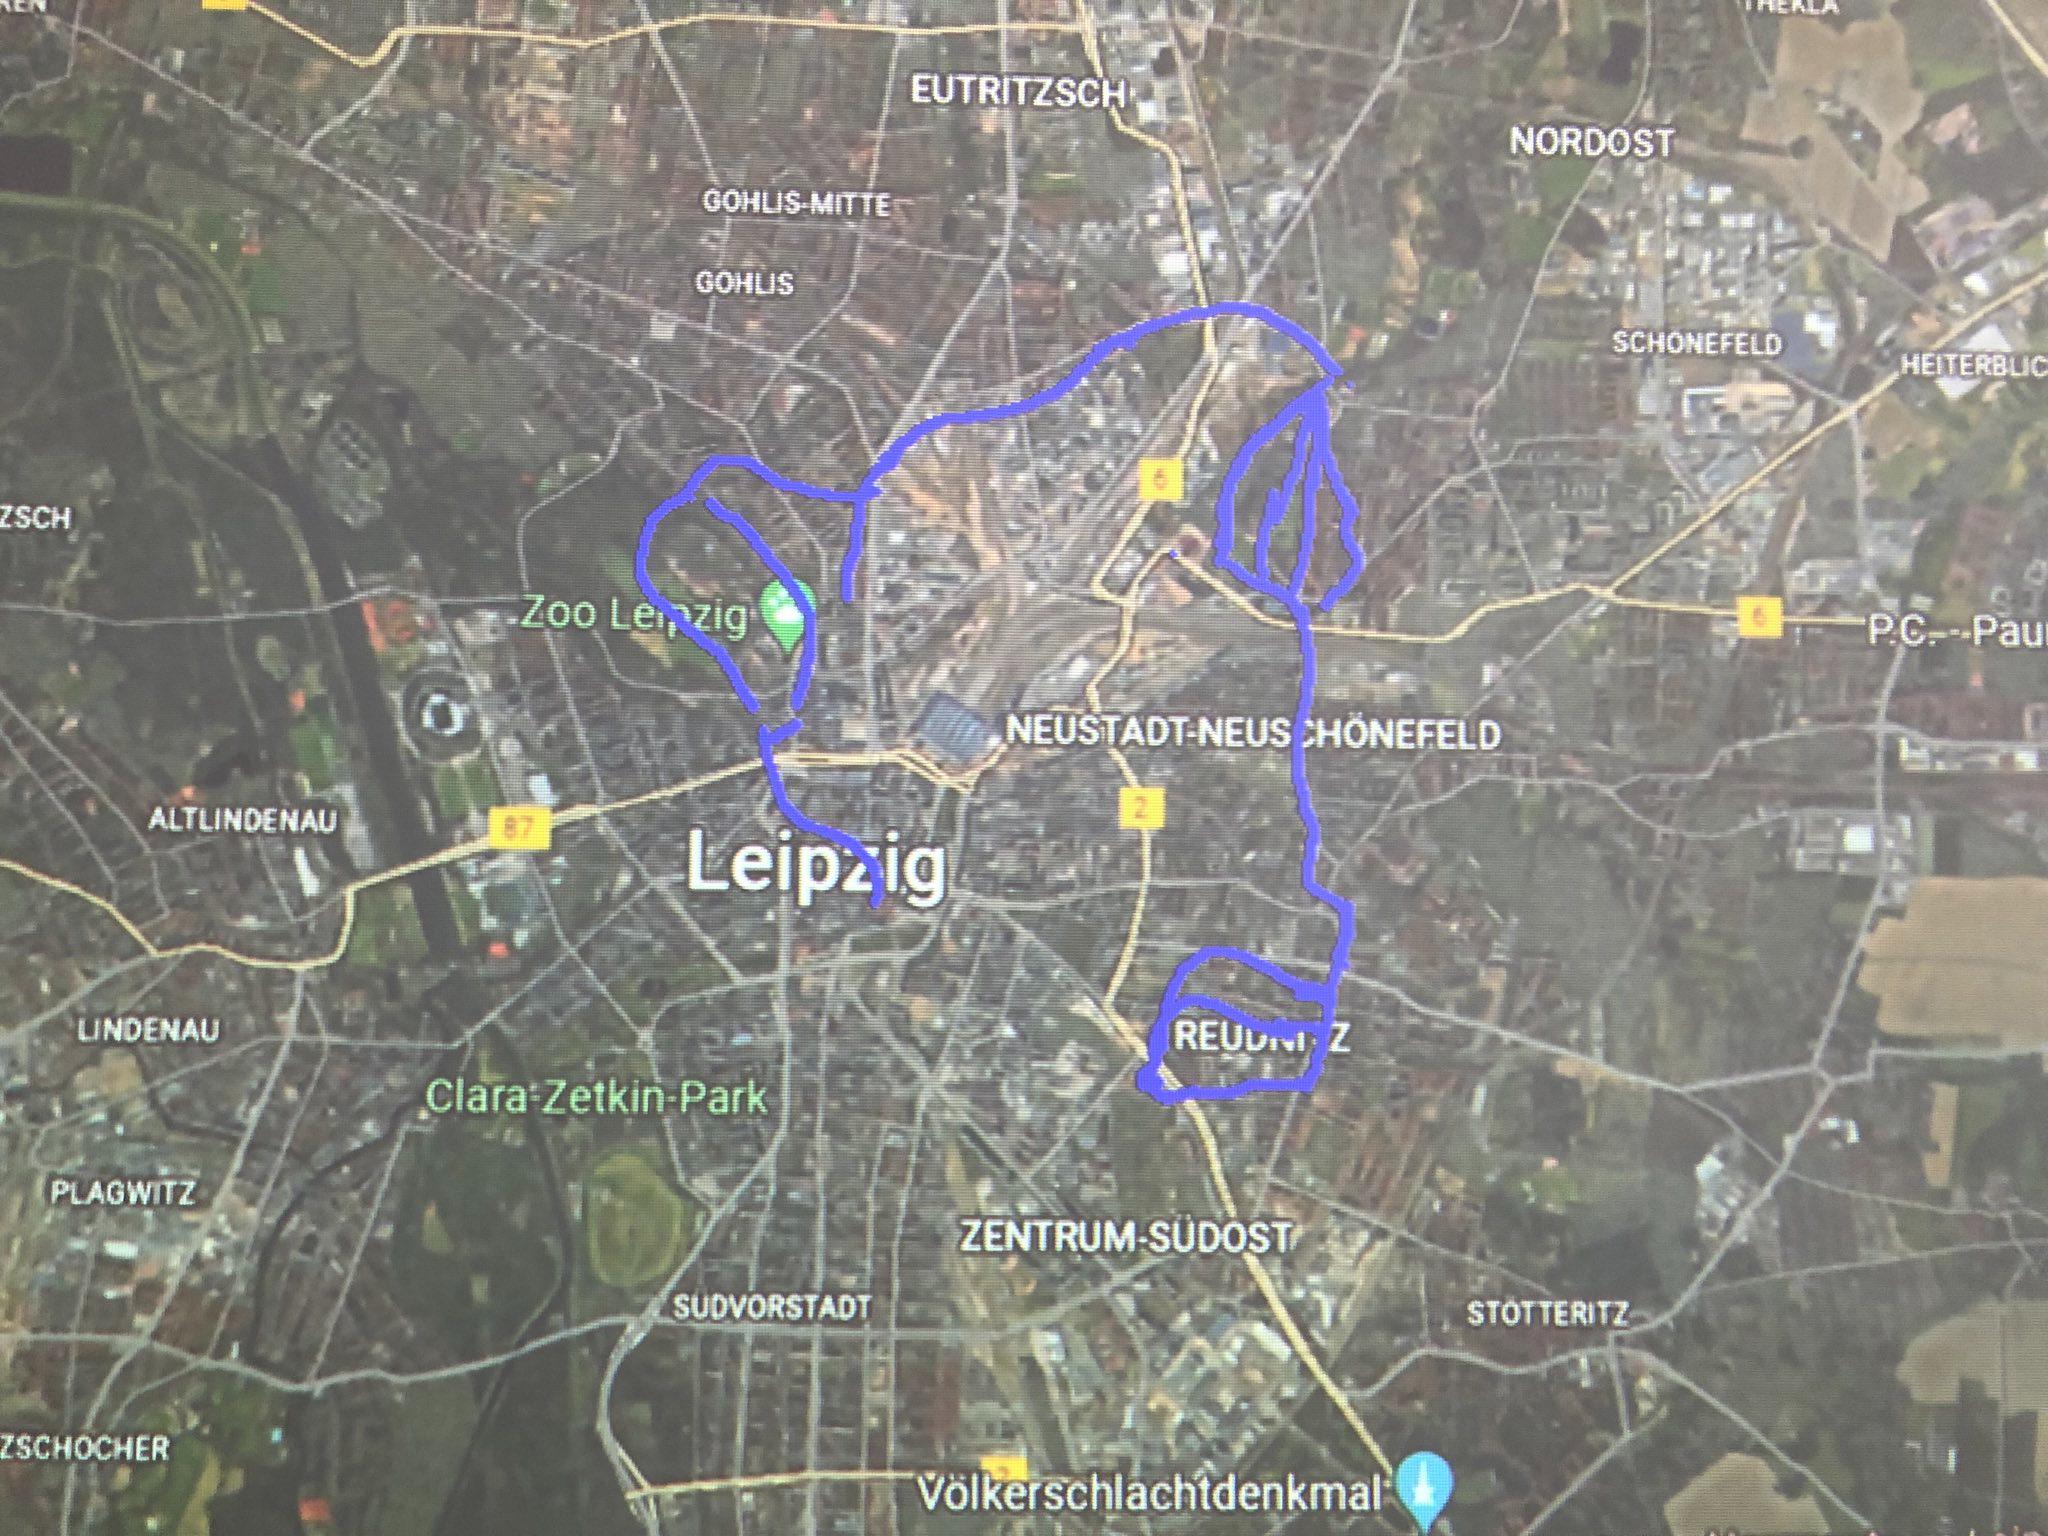 Karte von Leipzig mit in blau eingezeichneter vorgeschlagener Messtrecke.